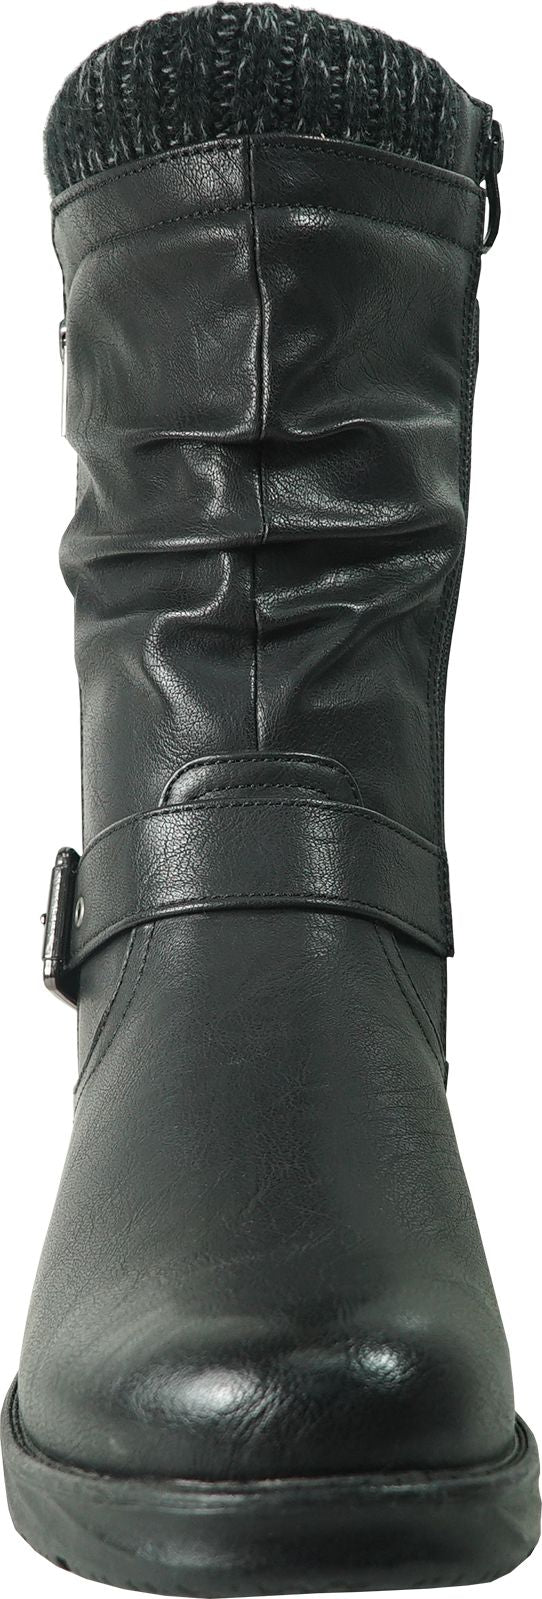 Vangelo Boots Hf0601 Black